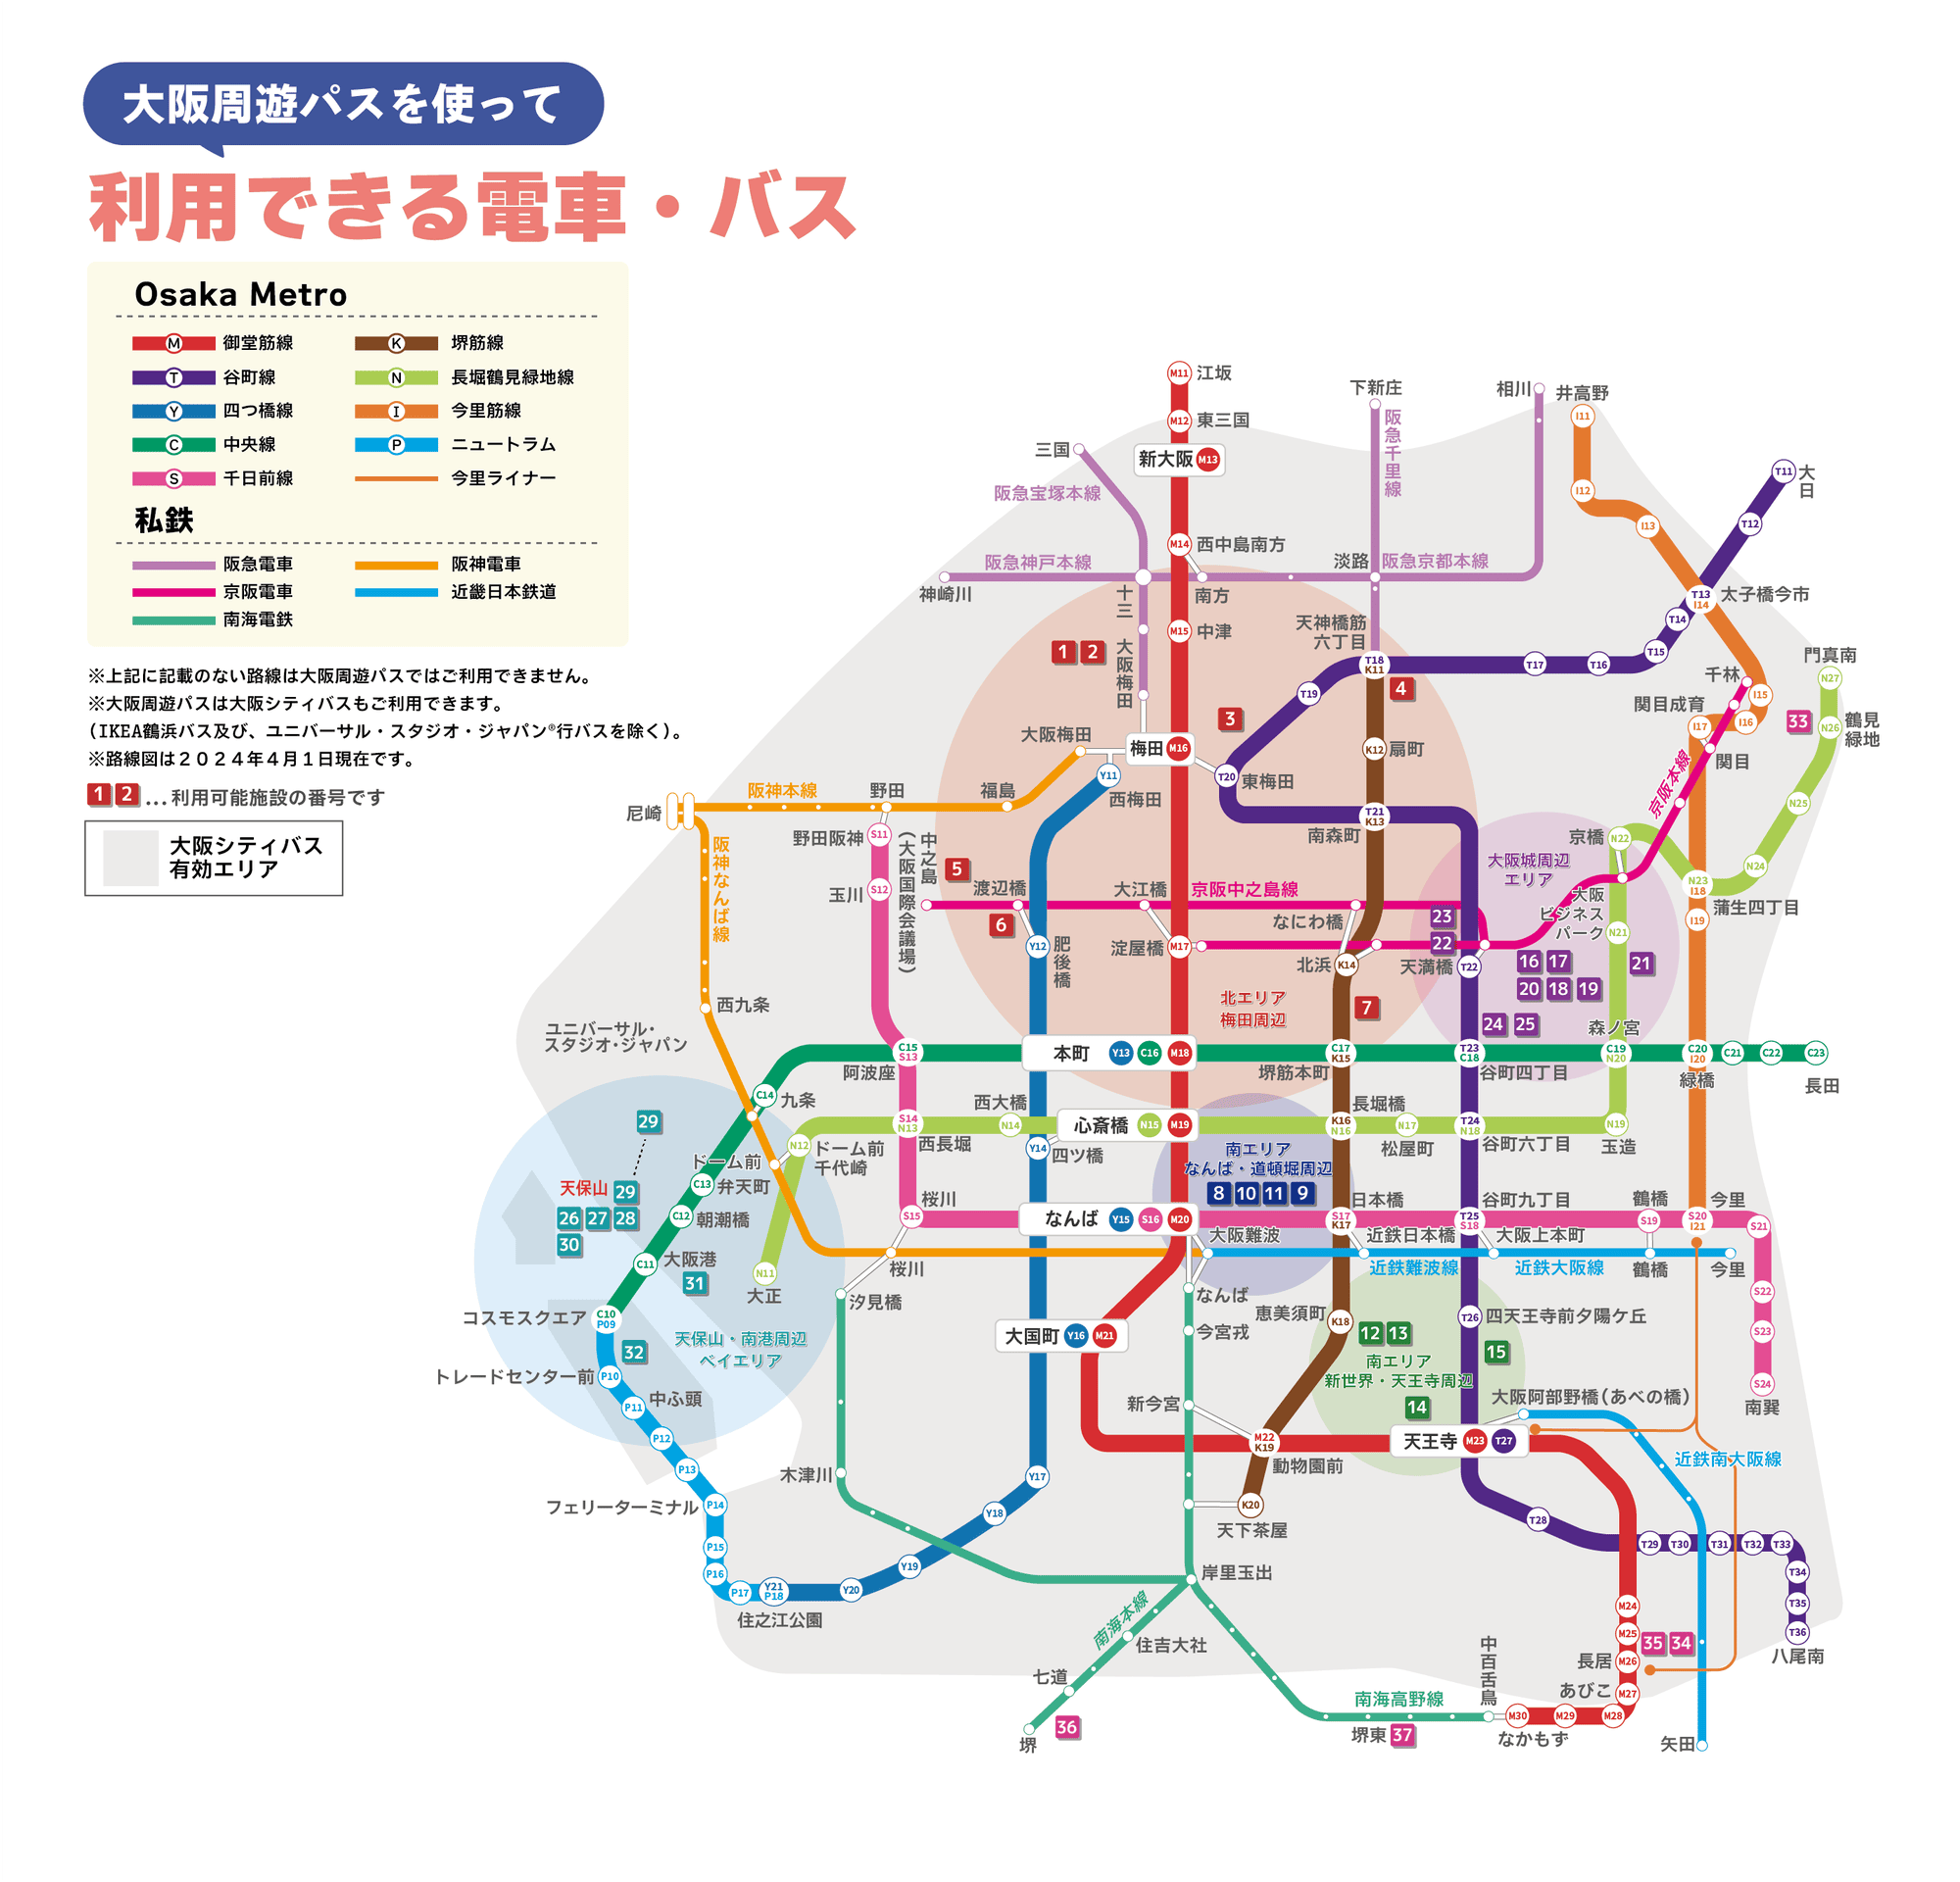 大阪周遊パスで利用できる電車・バス路線図